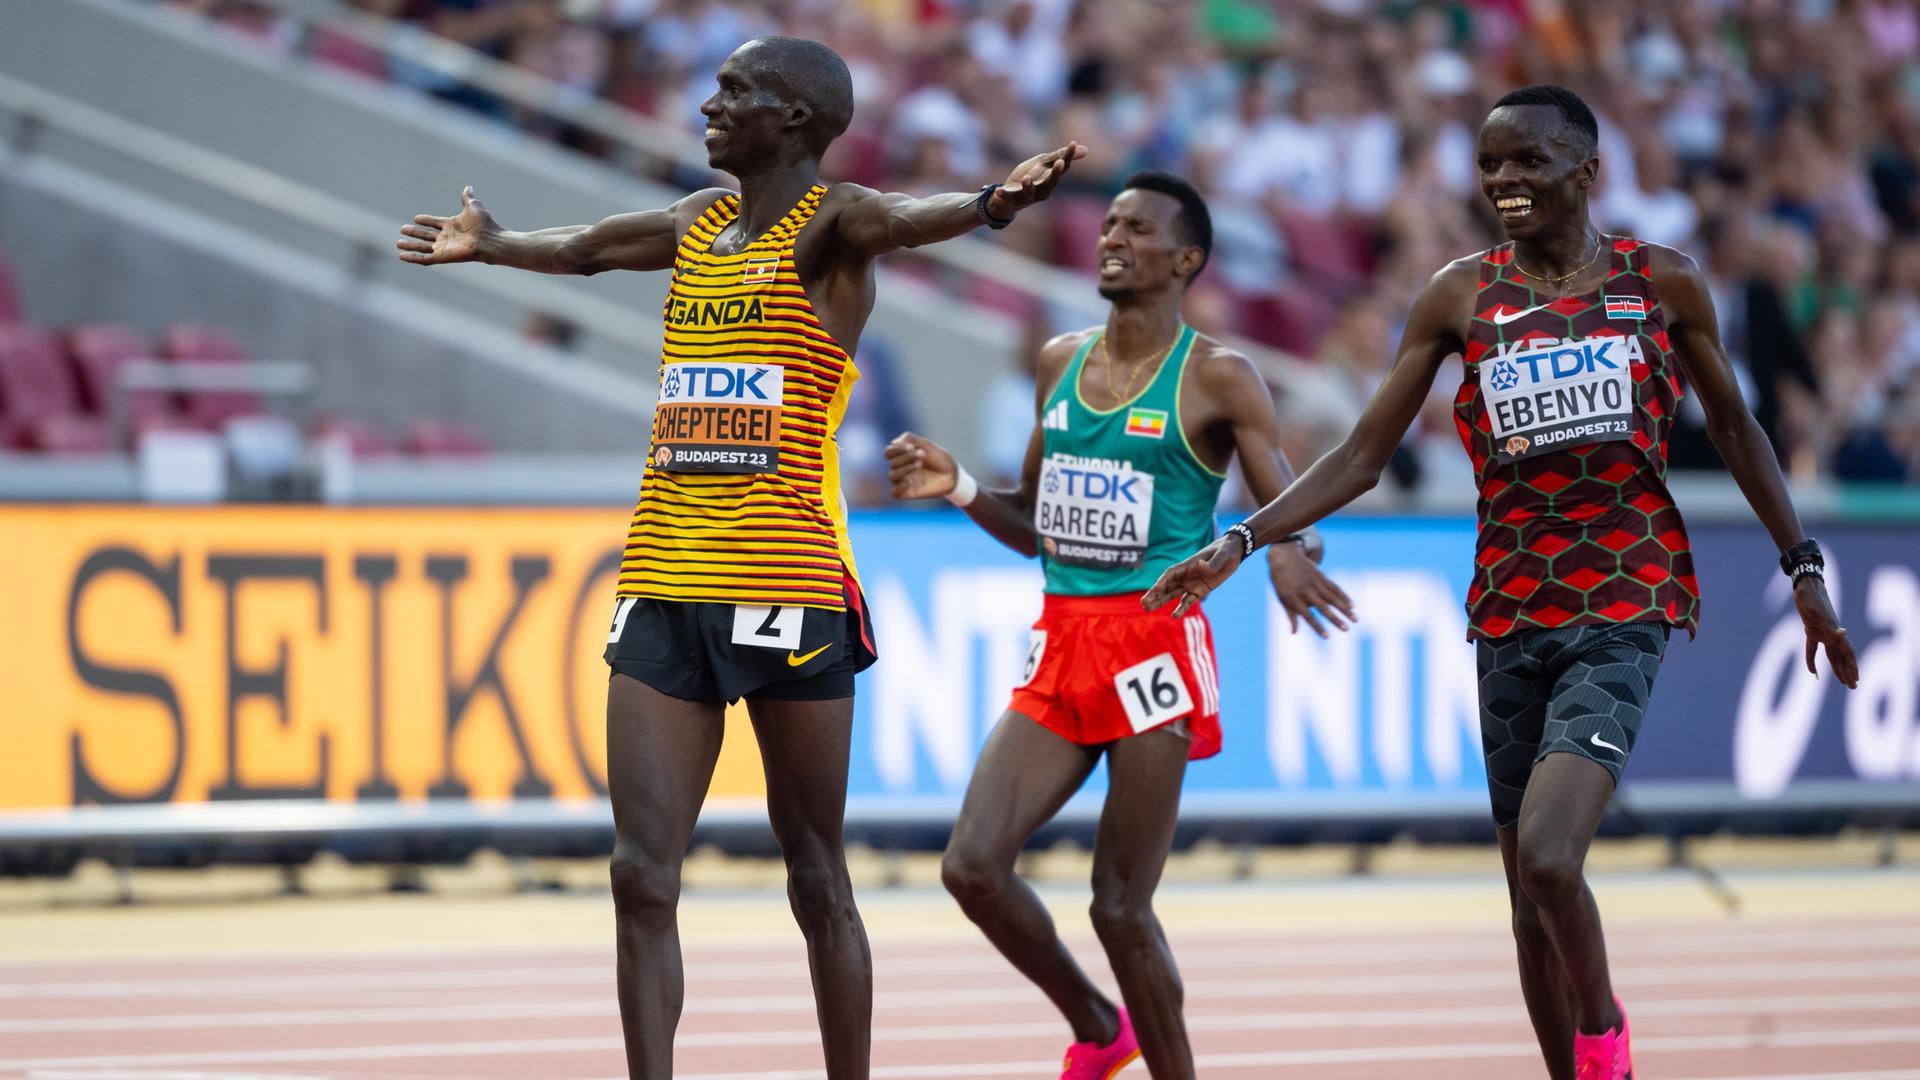 Leichtathletik-WM - Joshua Cheptege holt Gold über 10.000 Meter